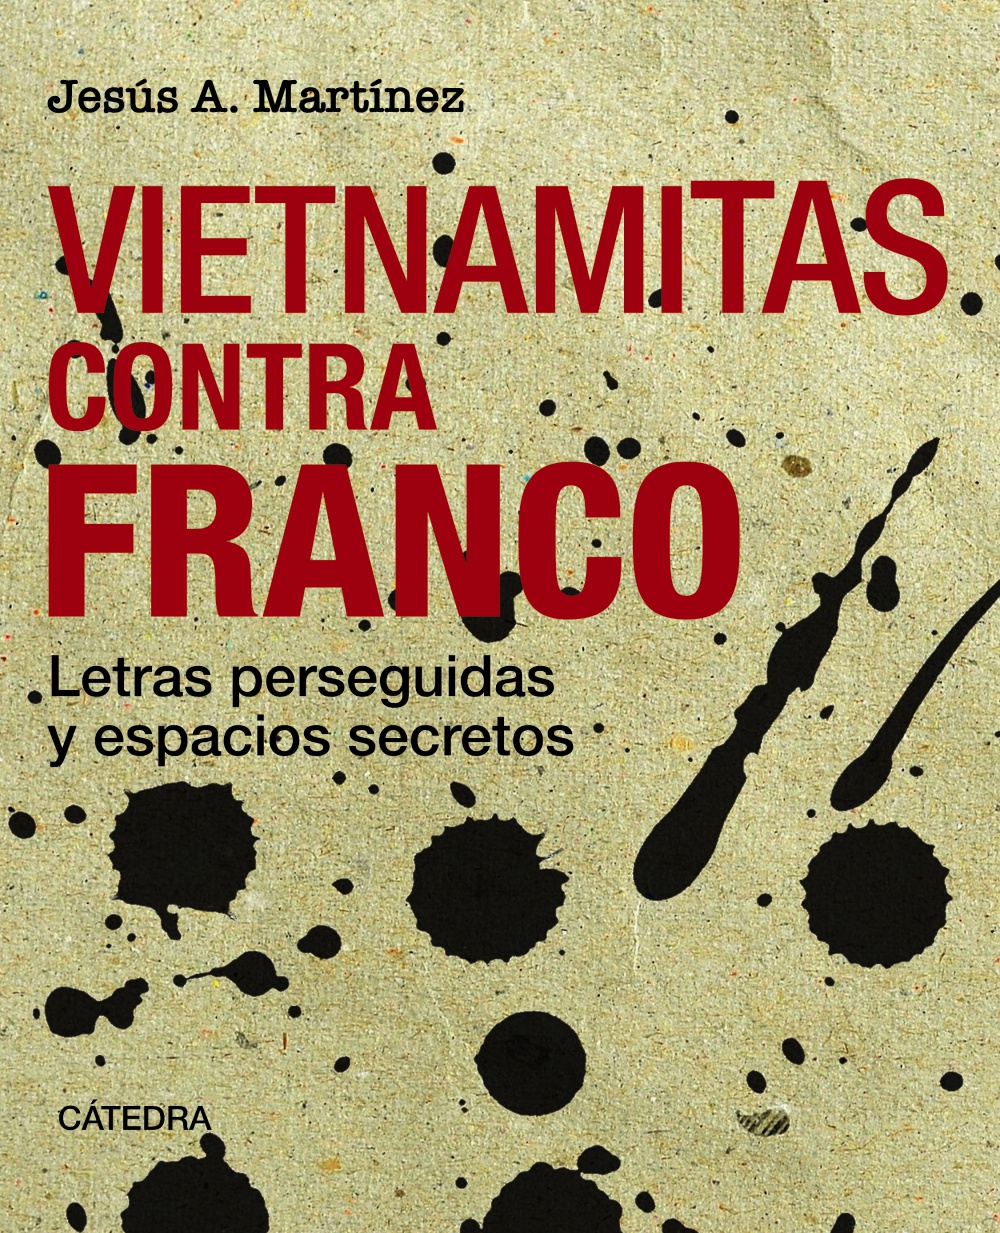 Ediciones CÃ¡tedra publica Vietnamitas contra Franco